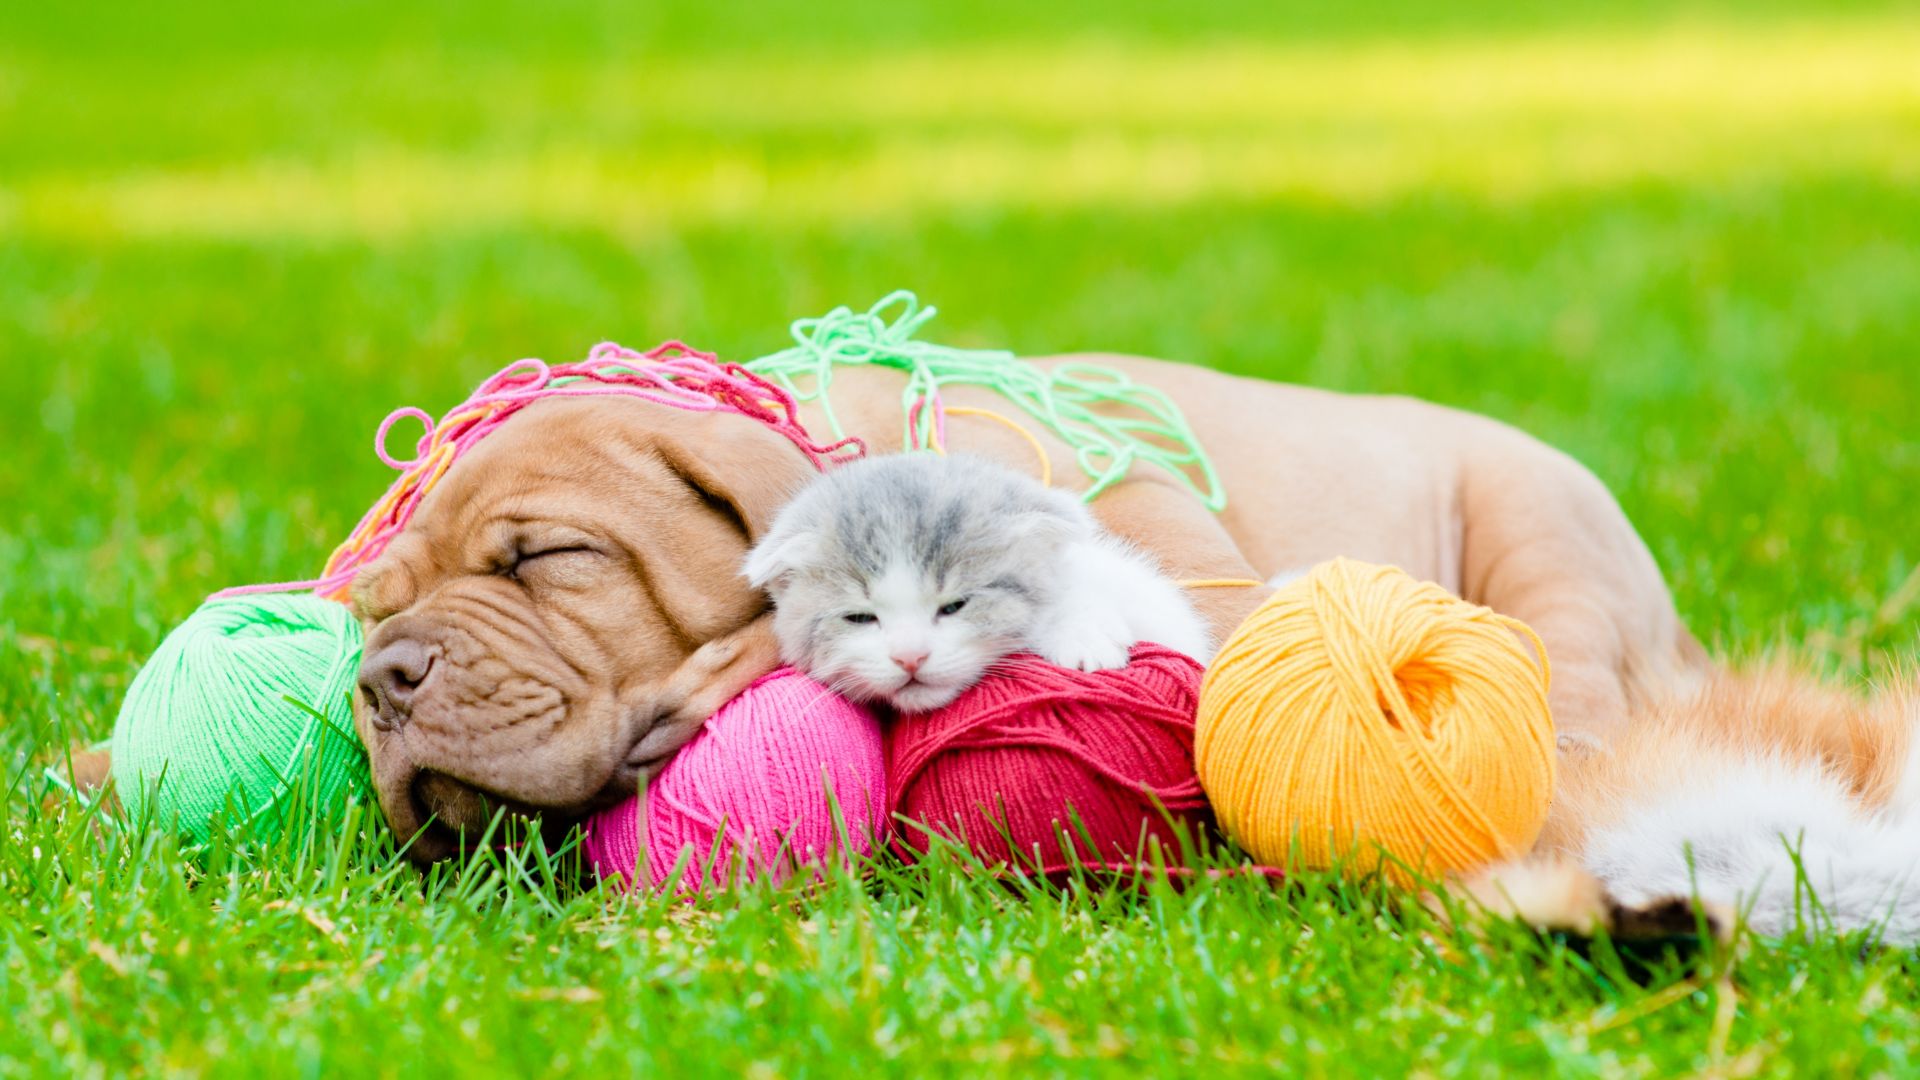 Wallpaper Asleep, dog and cat, woolen ball, grass